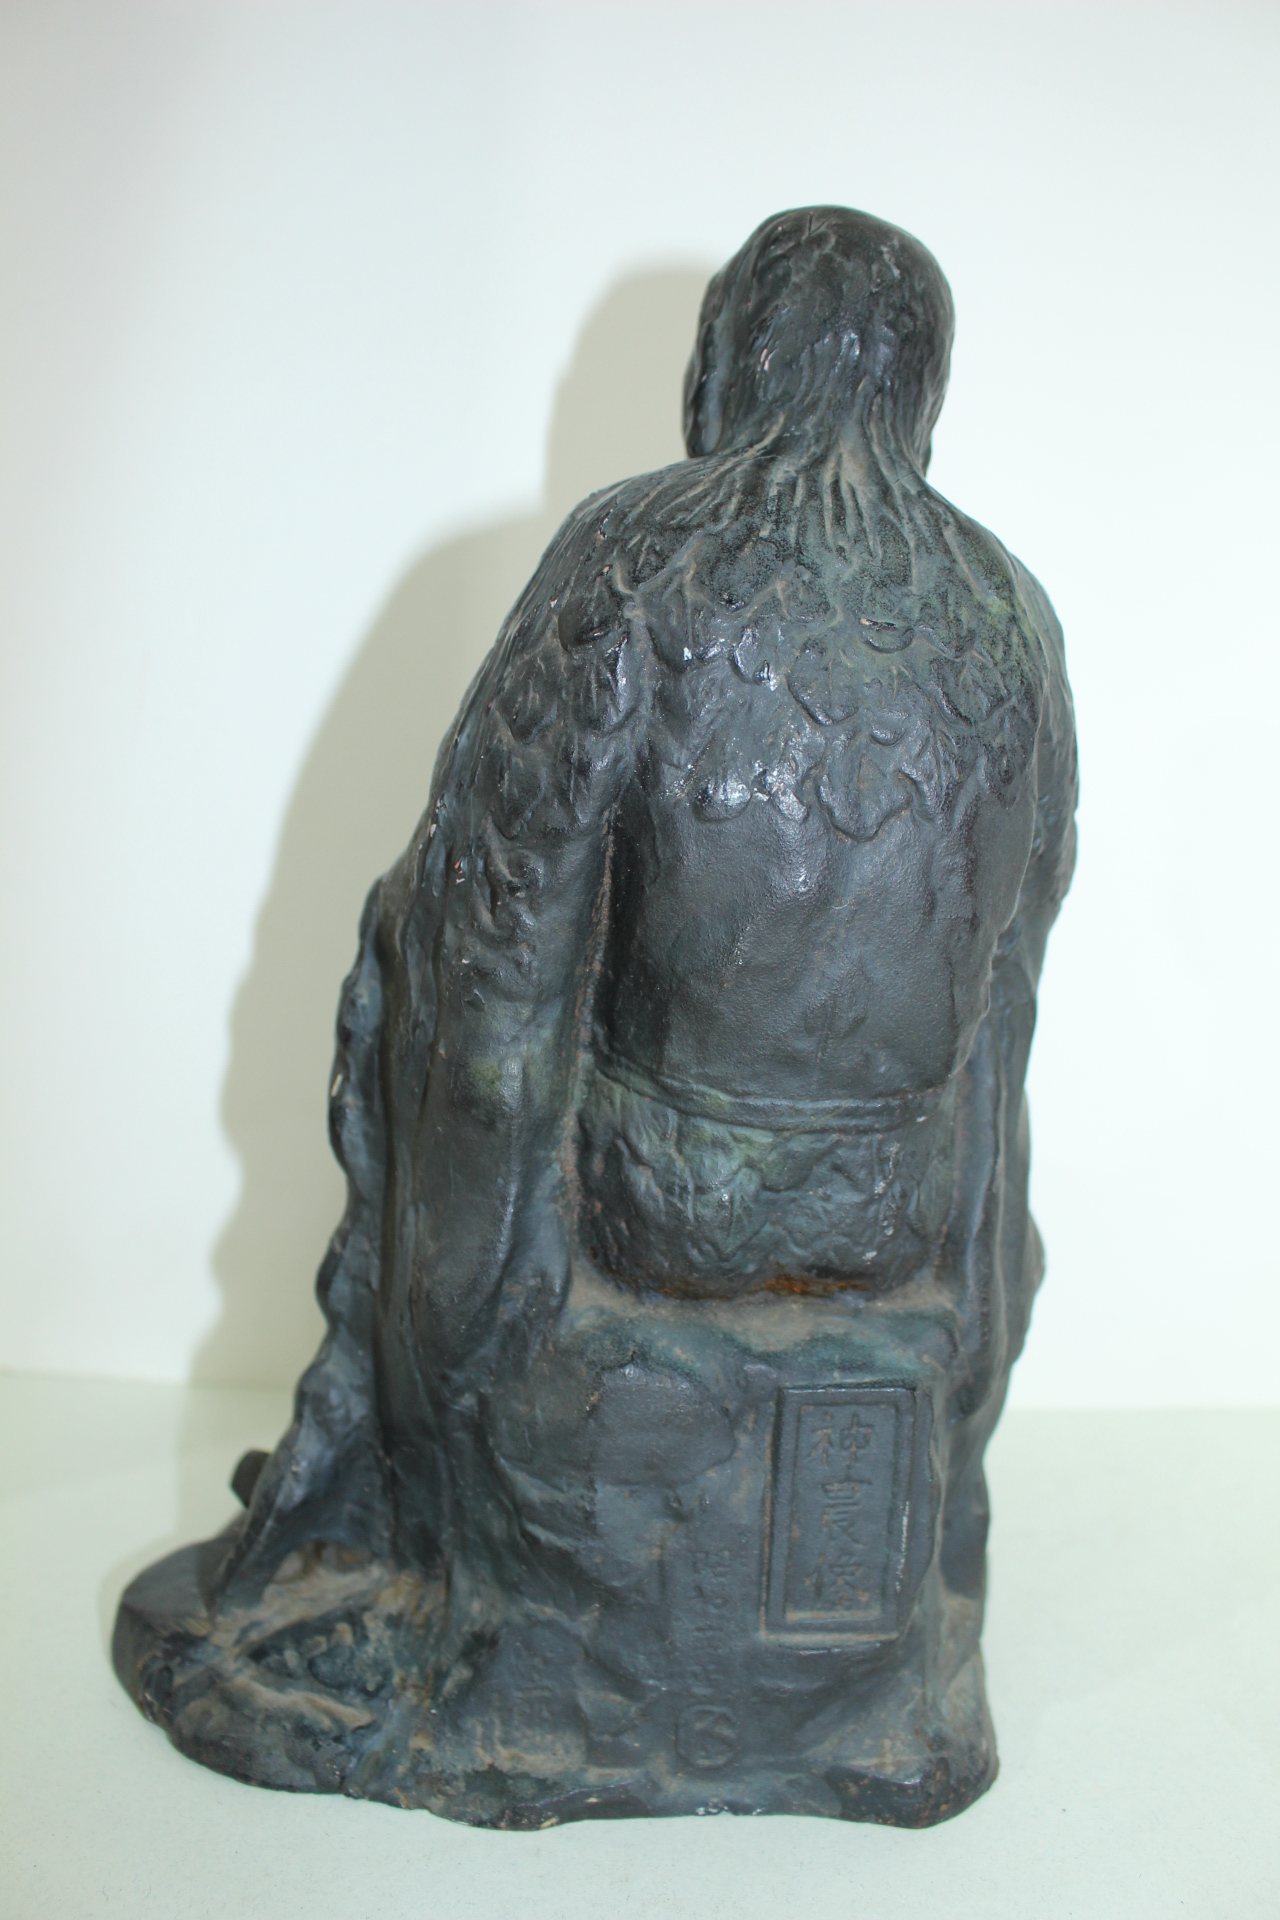 묵직한 무쇠로된 신농상(神農像) 조각상